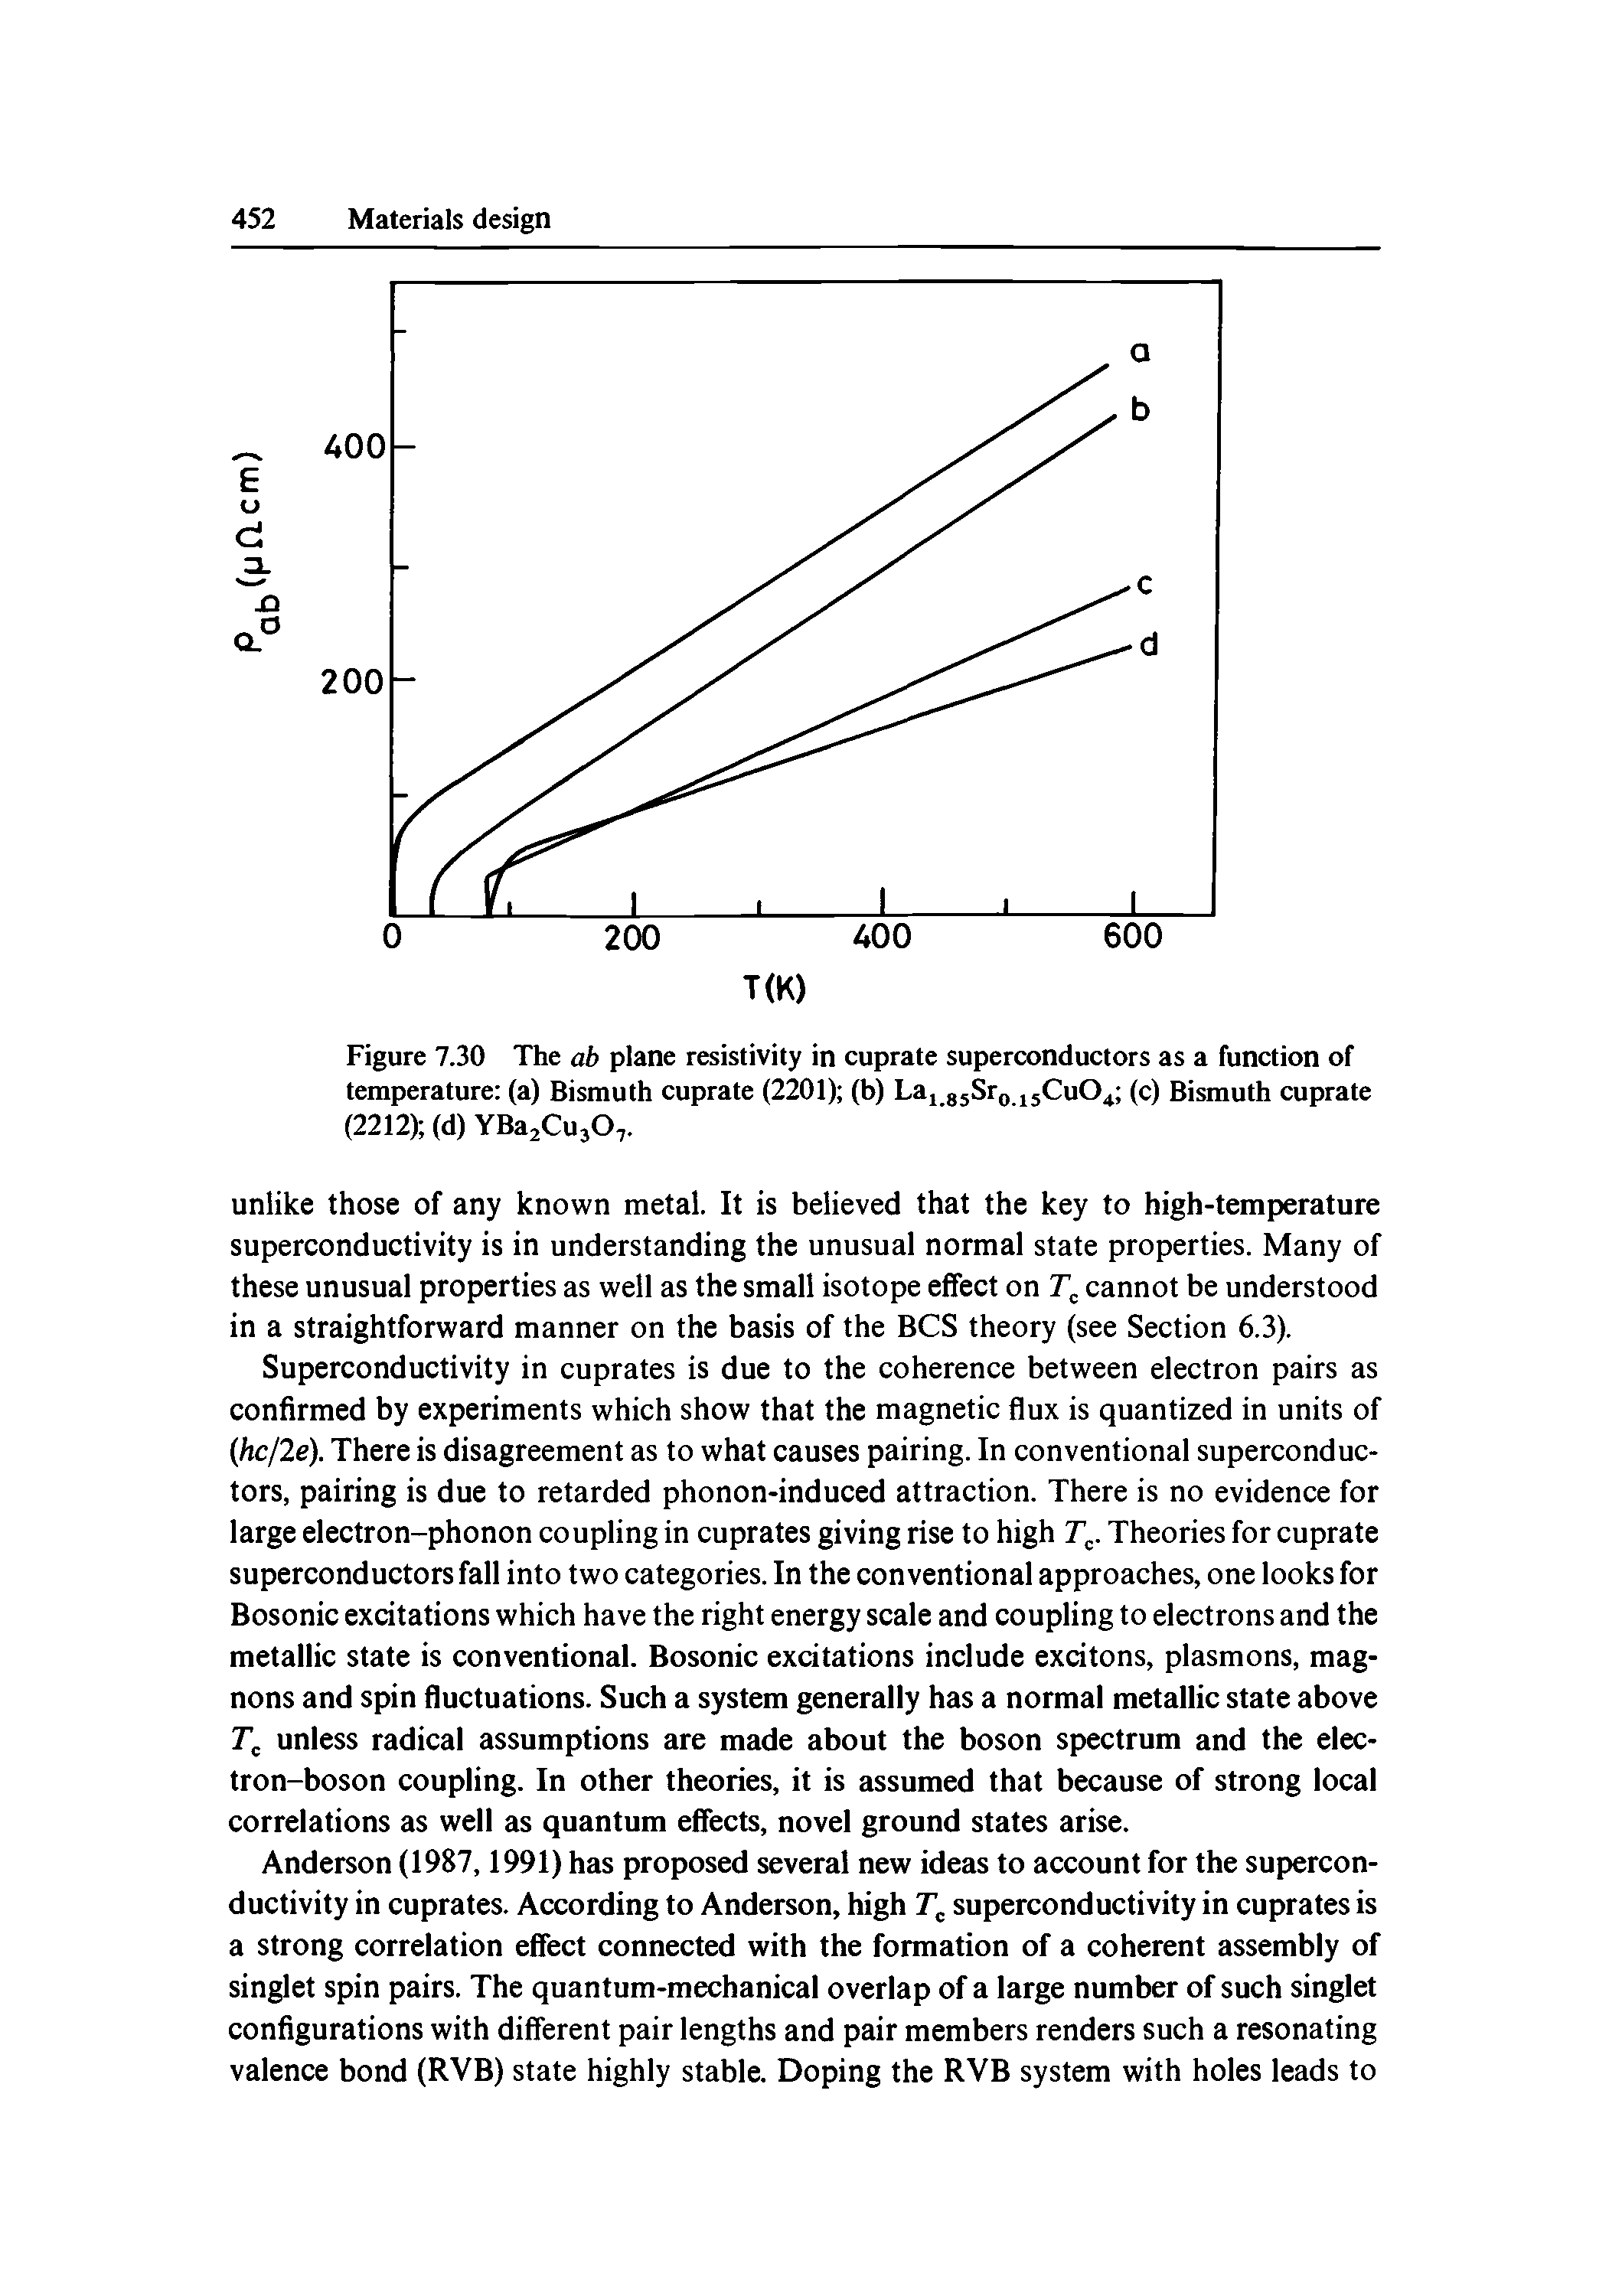 Figure 7.30 The ab plane resistivity in cuprate superconductors as a function of temperature (a) Bismuth cuprate (2201) (b) Laj gjSro jjCuO (c) Bismuth cuprate (2212) (d) YBajCujO,.